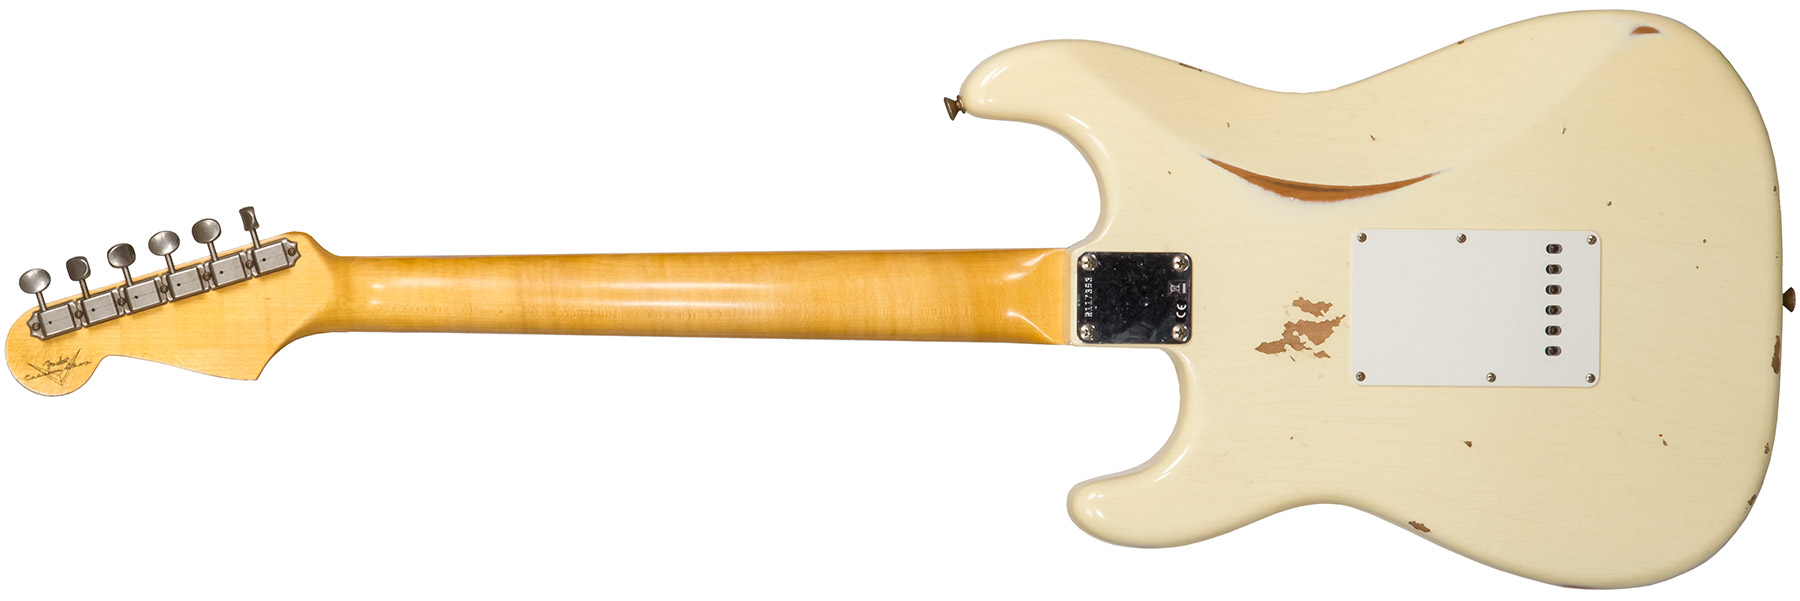 Fender Custom Shop Strat 1959 3s Trem Rw #r117393 - Relic Aged Vintage White - Str shape electric guitar - Variation 1